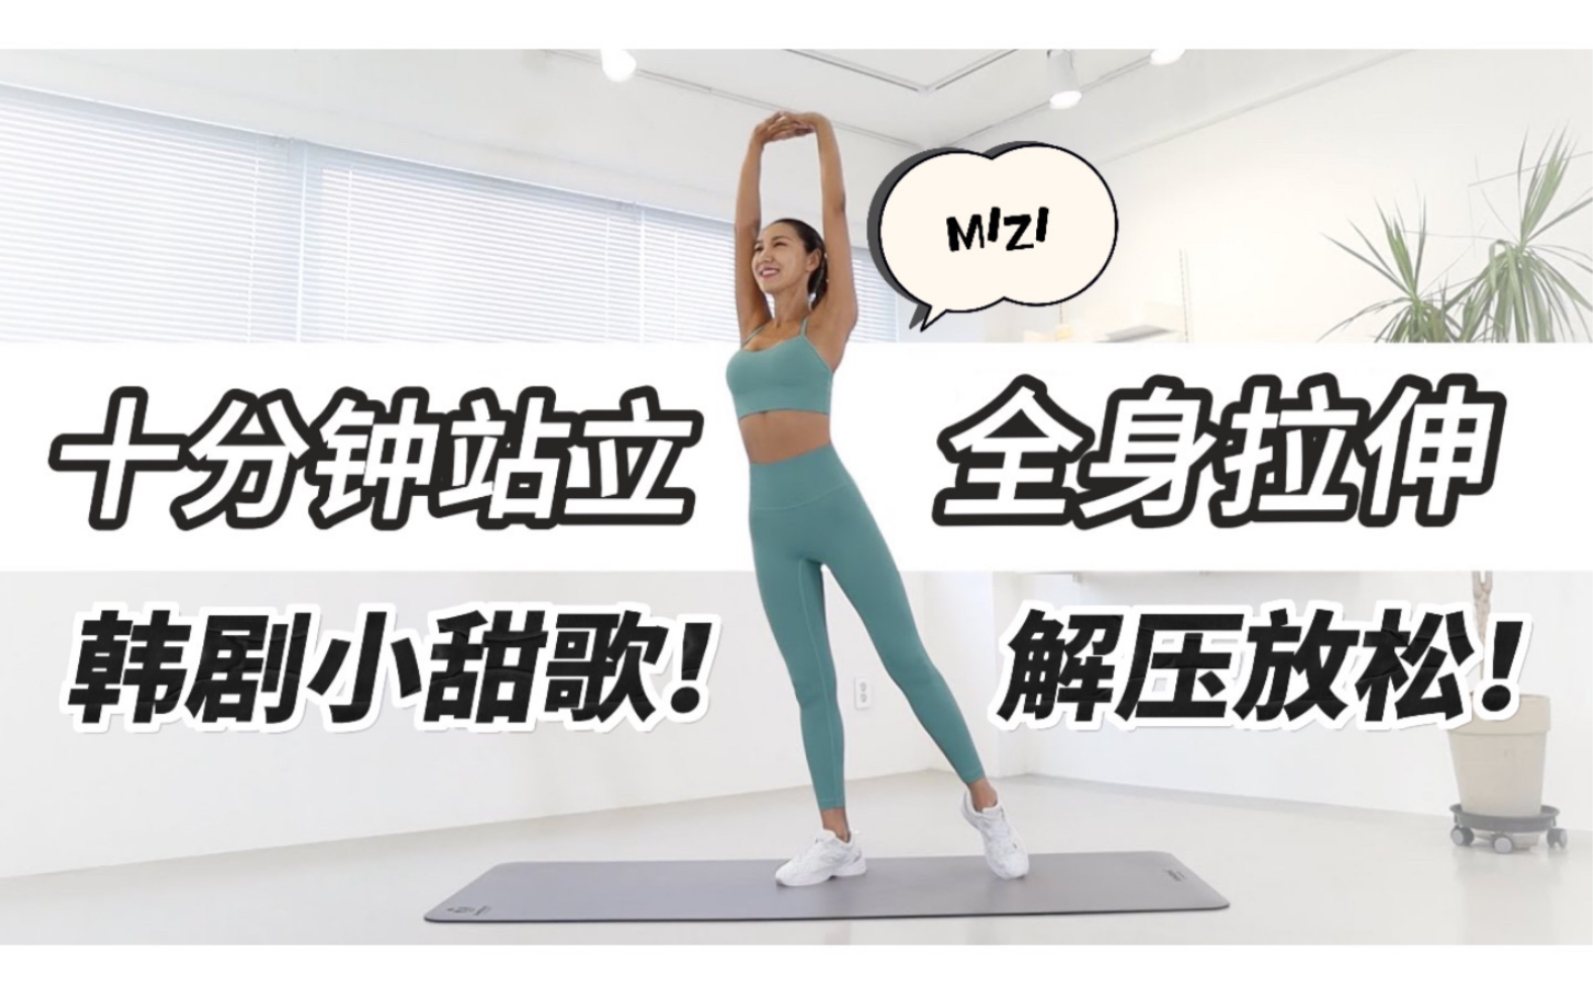 【练后拉伸·10分钟】自用韩剧小甜歌~MIZI从头到脚站立、运动后全身拉伸 | 放松紧绷身体 | 缓解肌肉酸痛 | 任何人适用